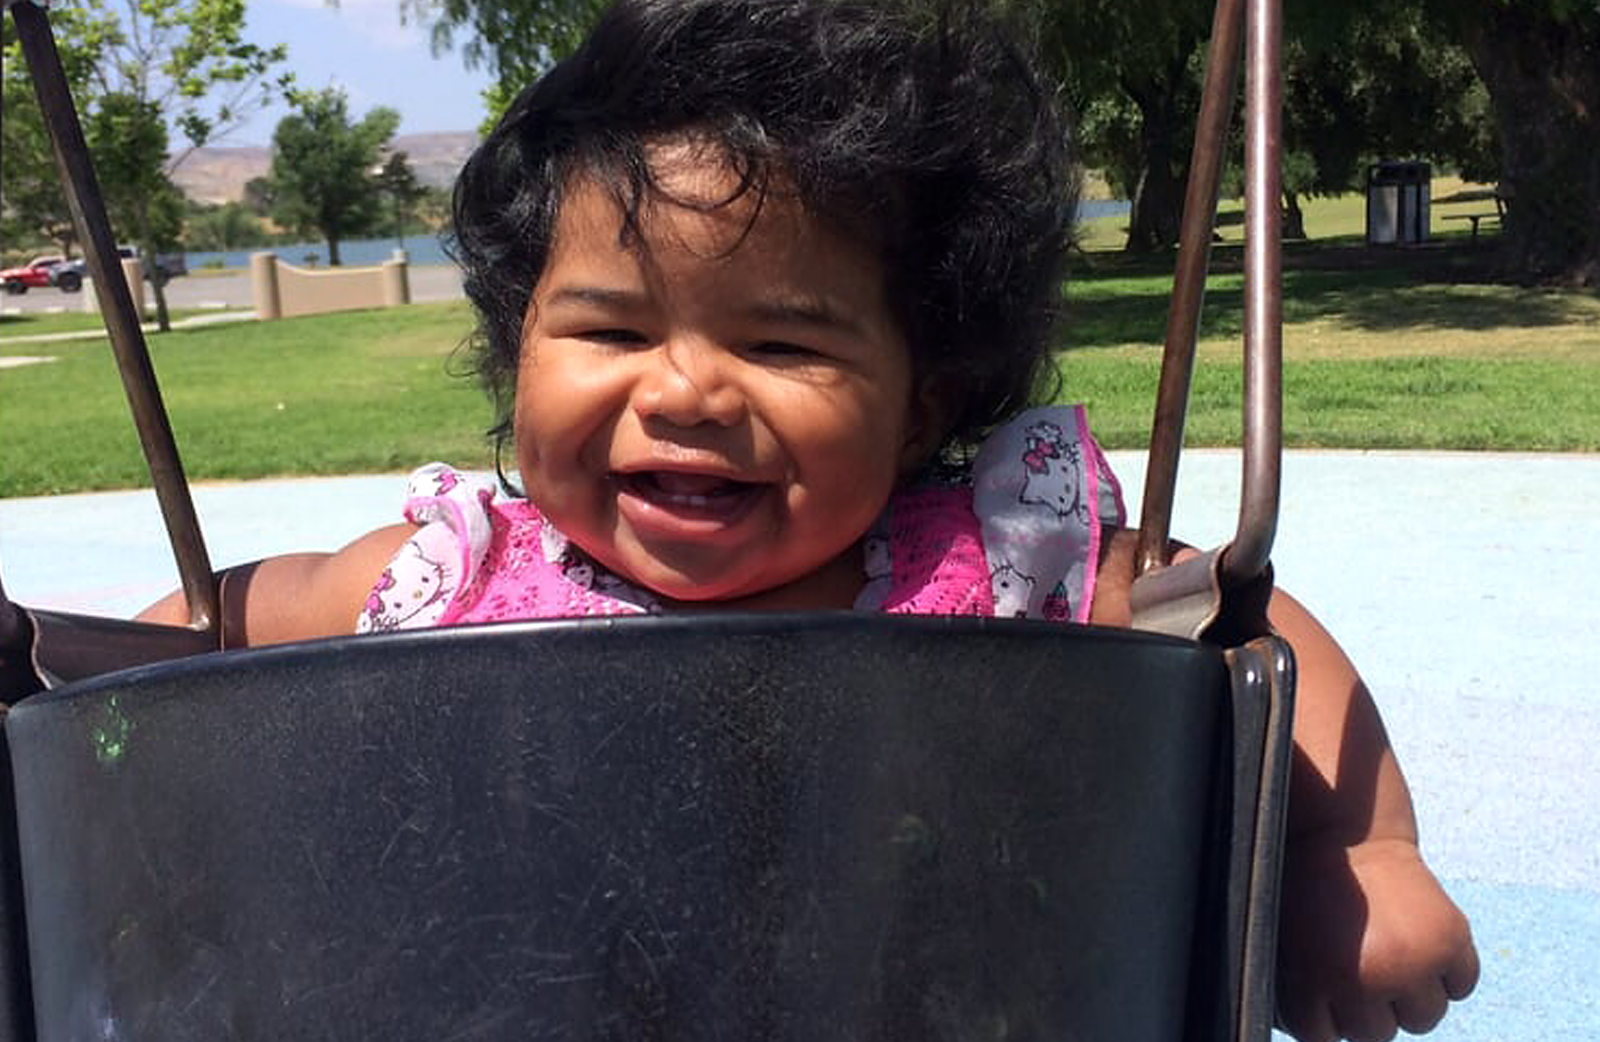 A smiling girl toddler swinging at Prado park.